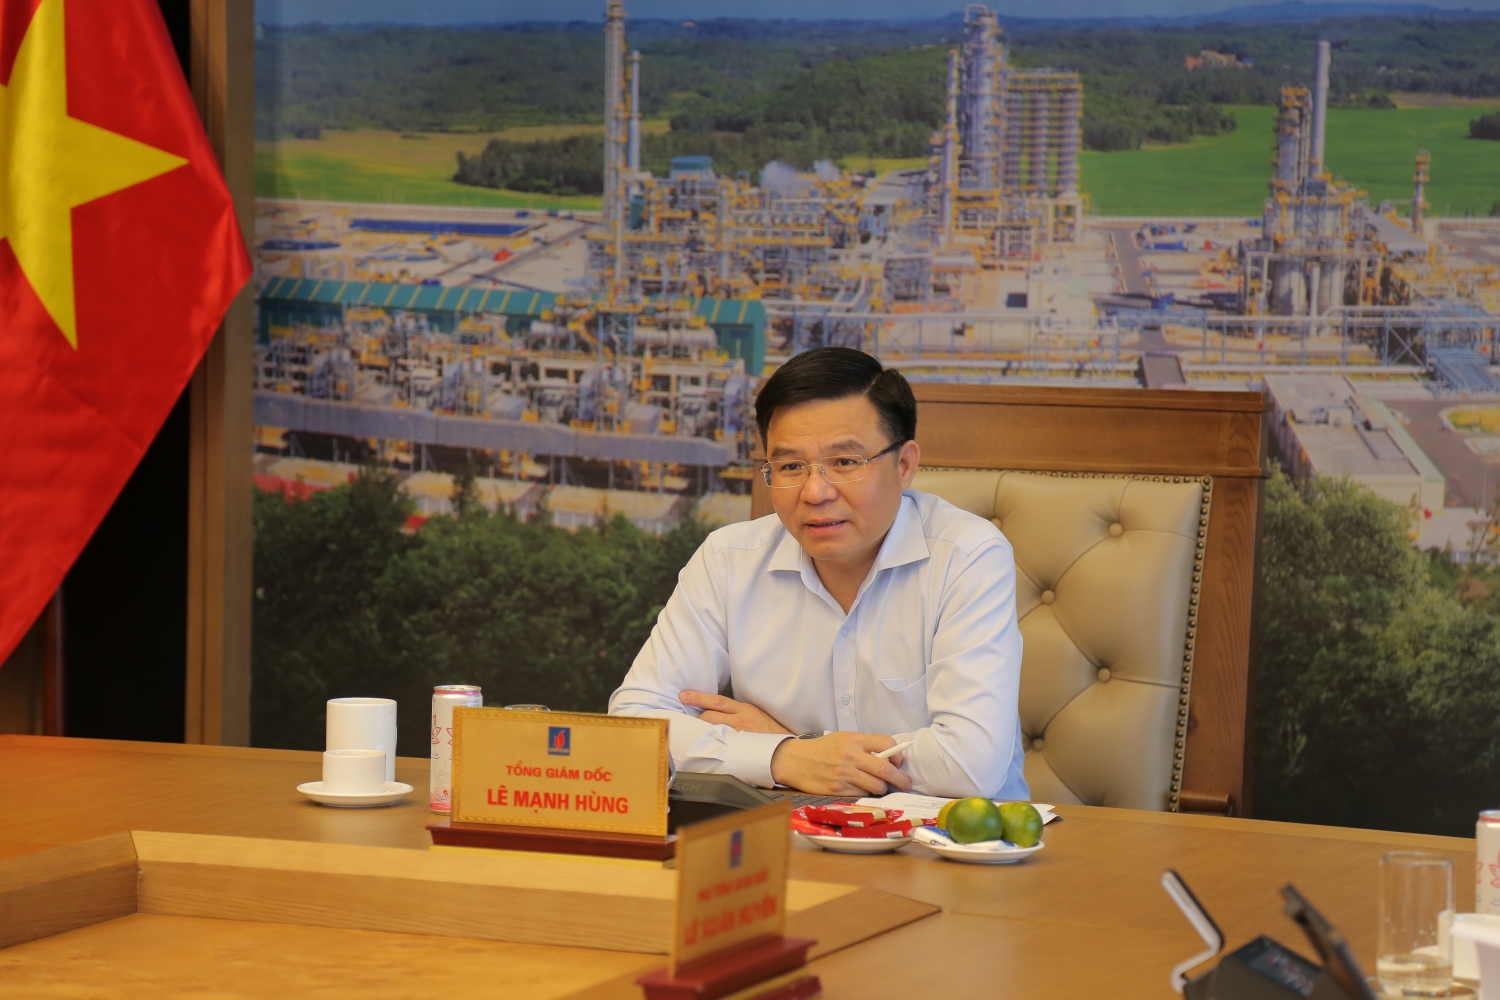 Tổng giám đốc Petrovietnam Lê Mạnh Hùng phát biểu tại buổi làm việc